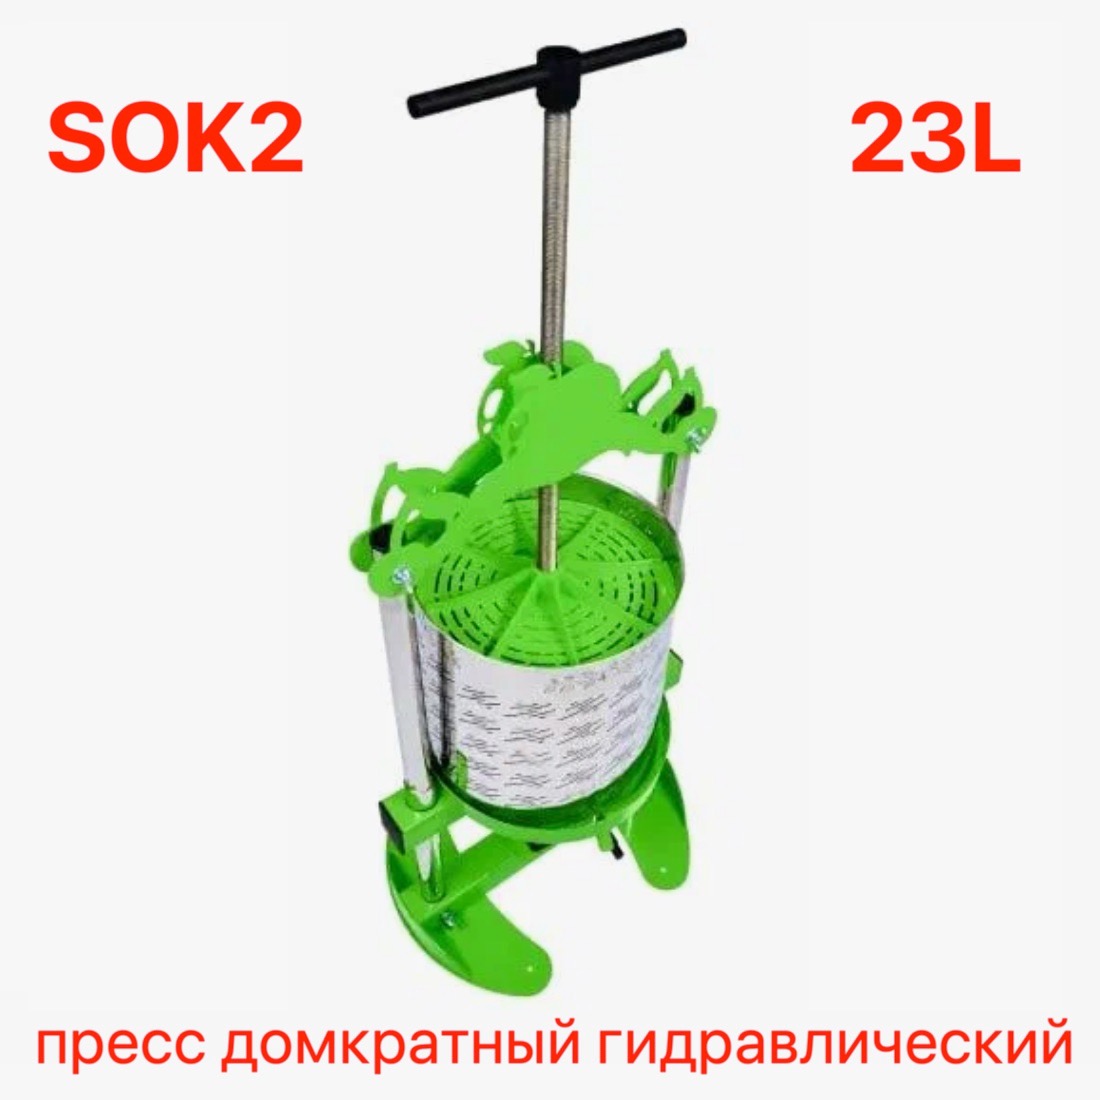 Пресс домкратный гидравлический SOK2 23 л